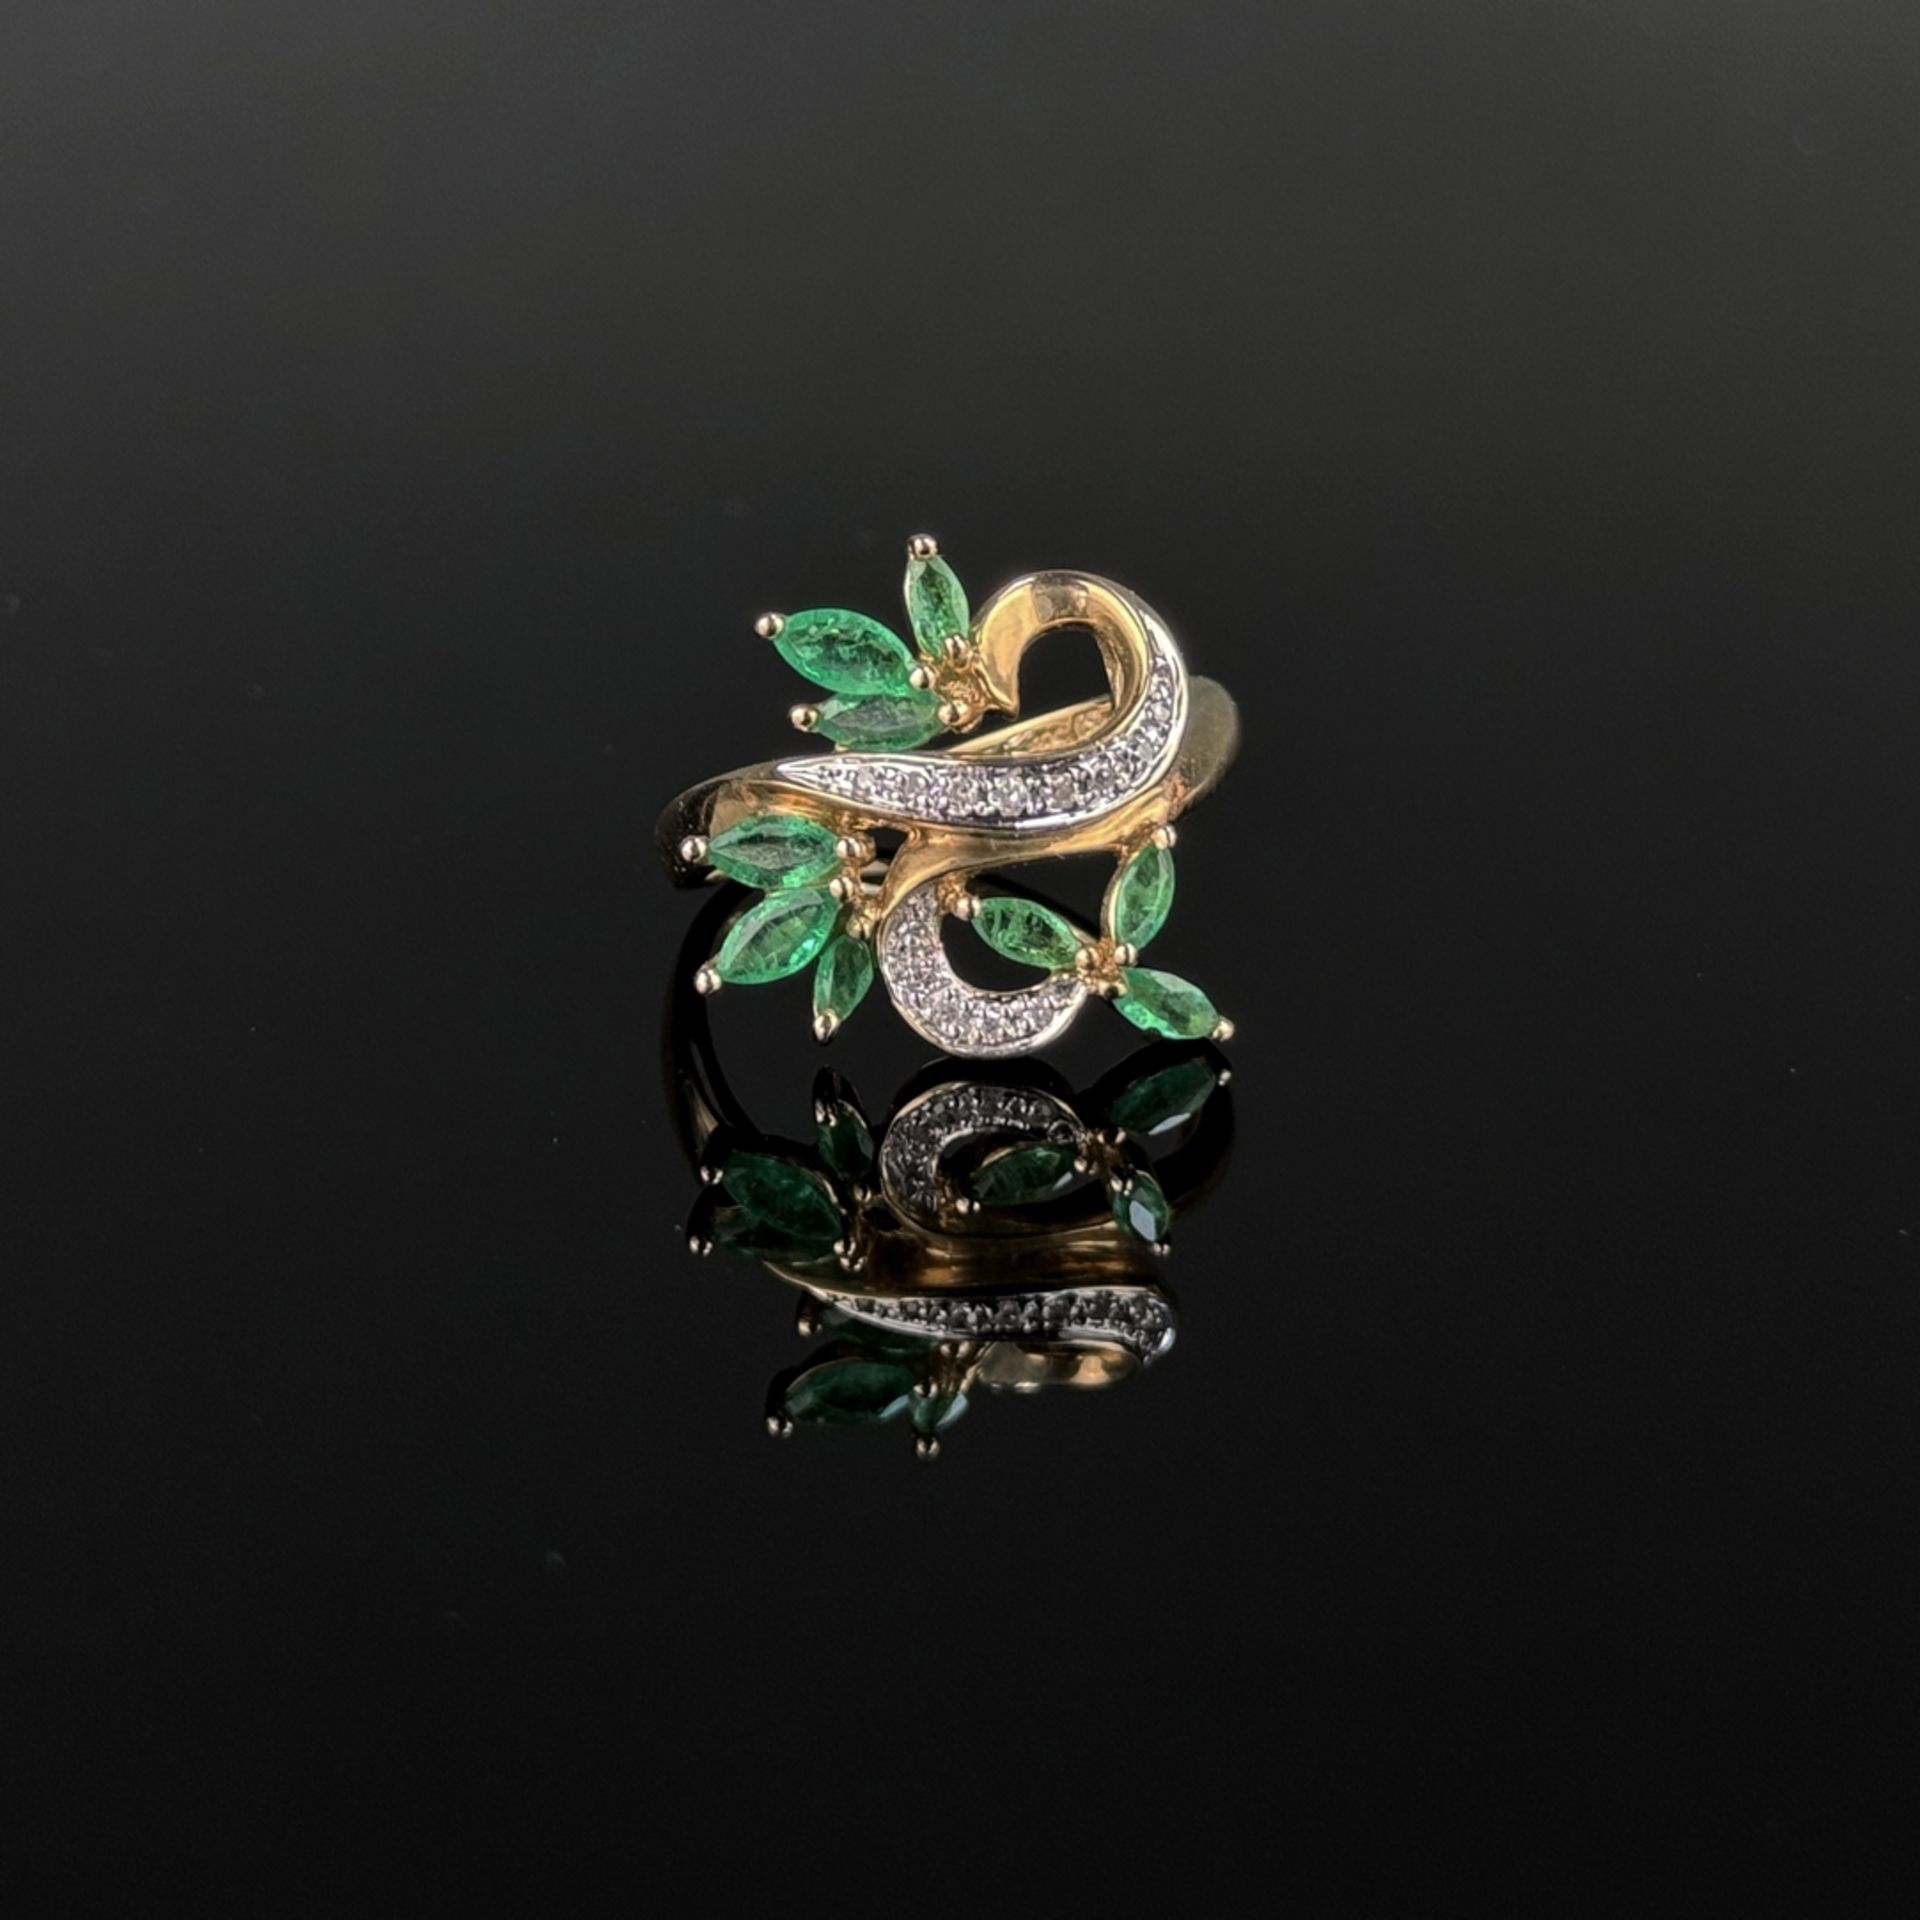 Smaragd Diamant Ring, 585/14K Weiß- und Gelbgold (punziert), 4,32g, fein ausgestaltet als Blattmoti - Bild 2 aus 3